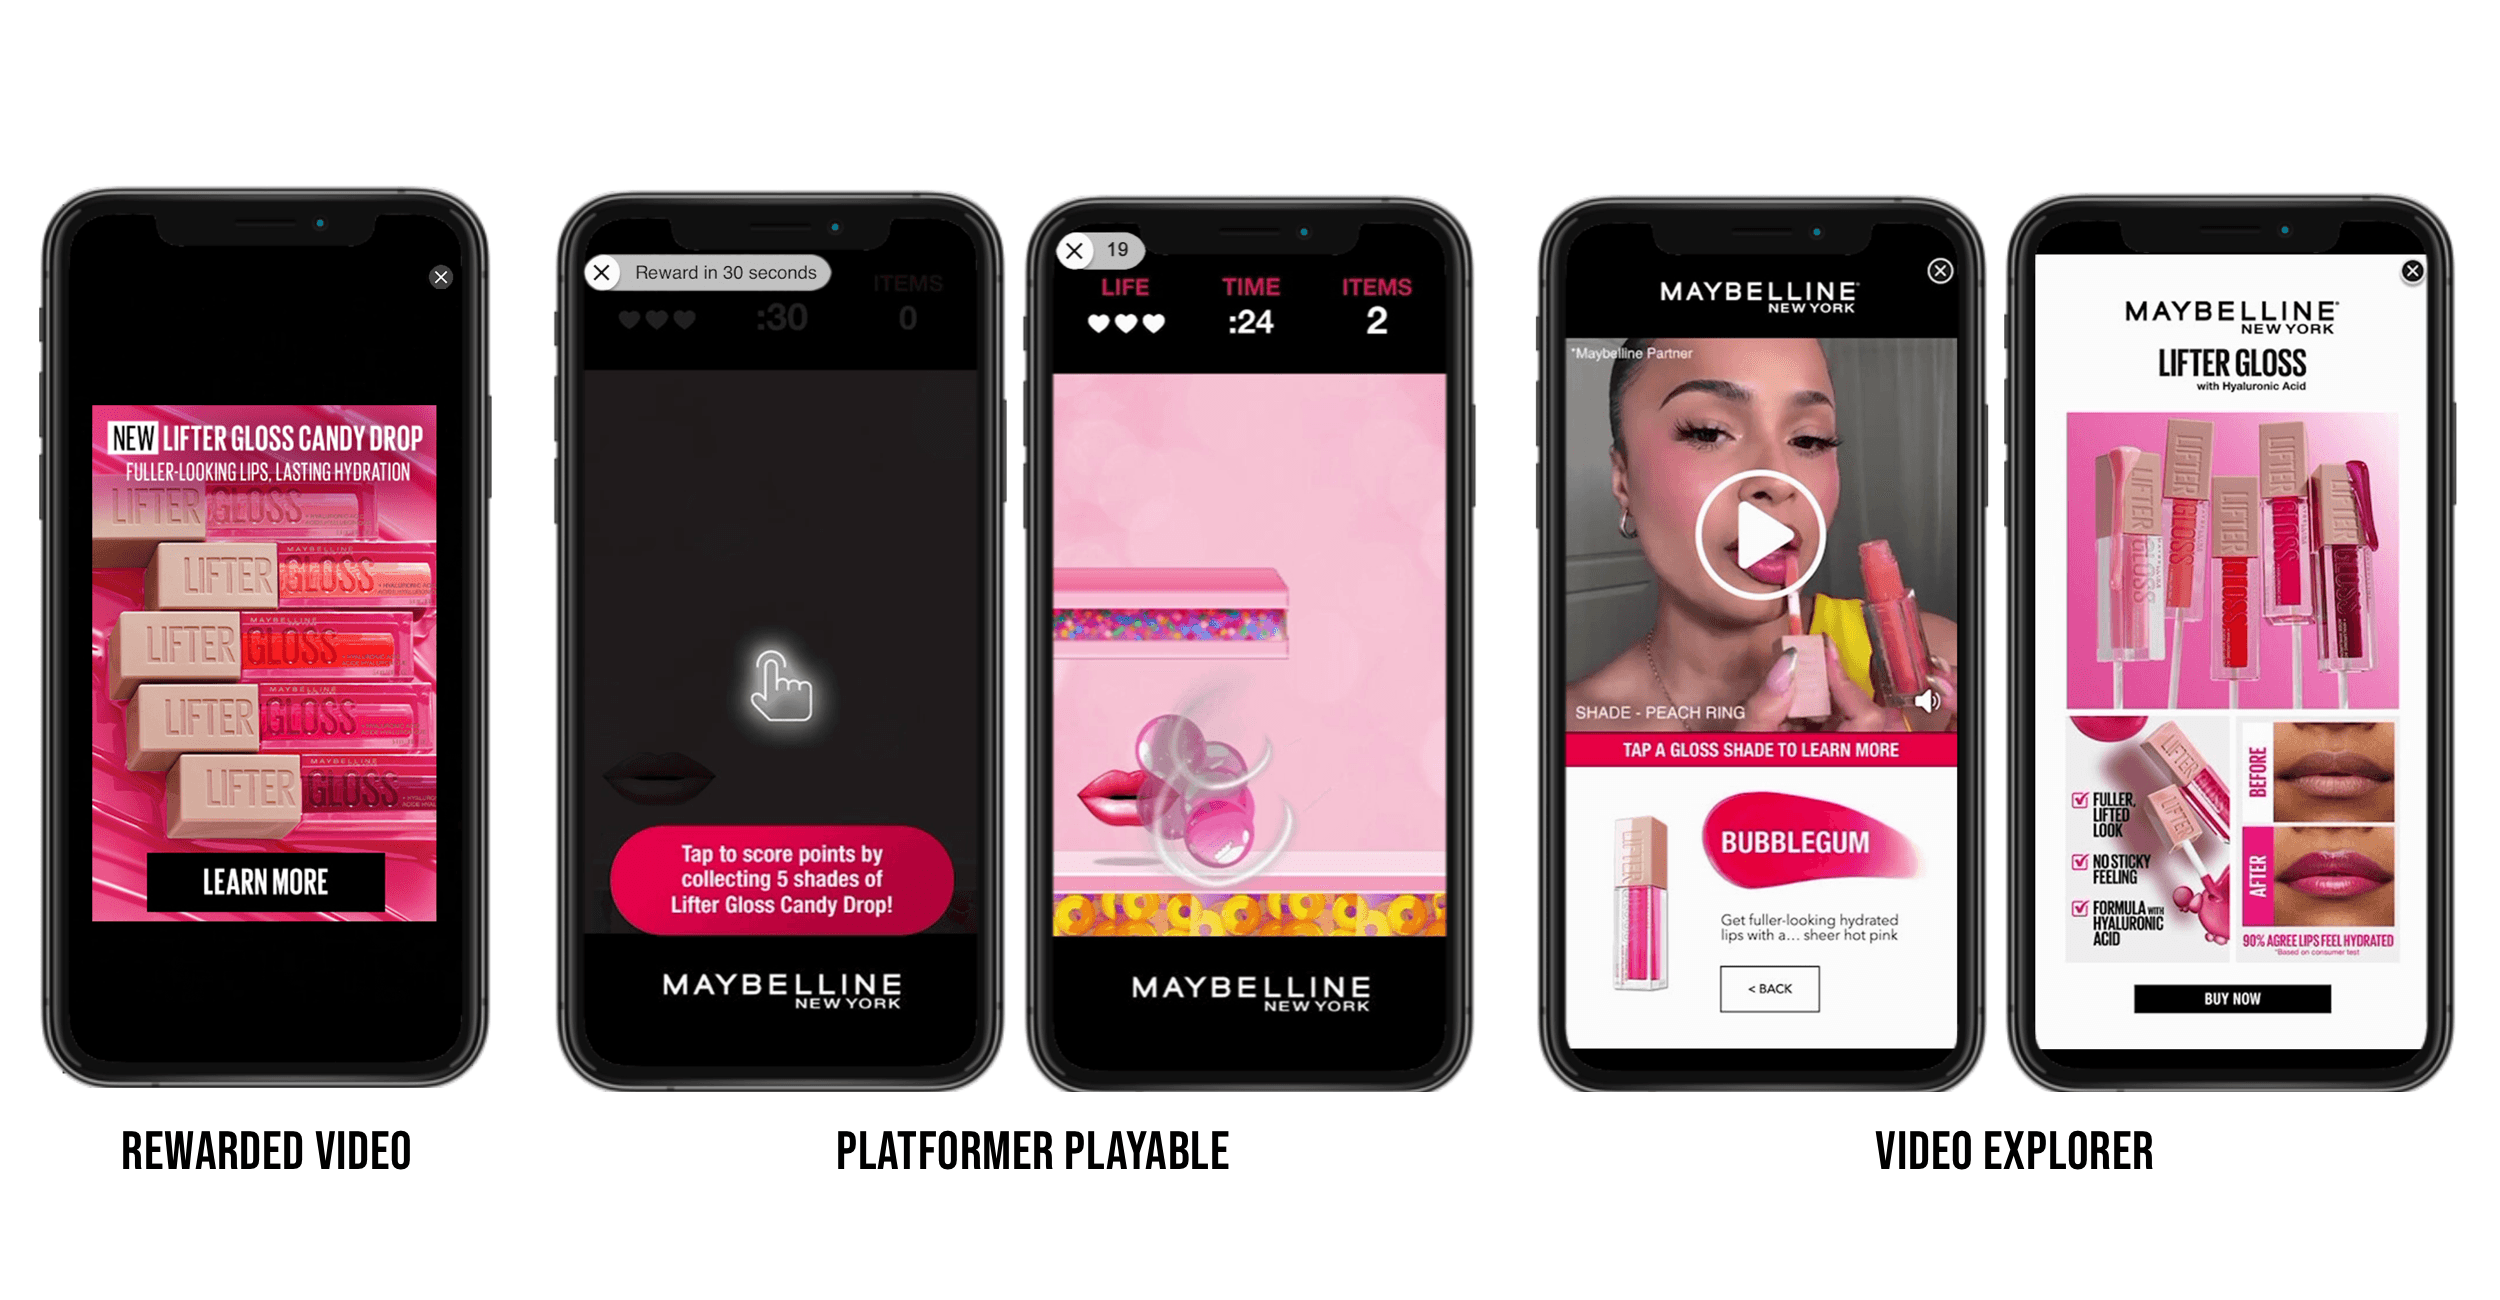 Esempi per la campagna Lifter Gloss Candy Drop